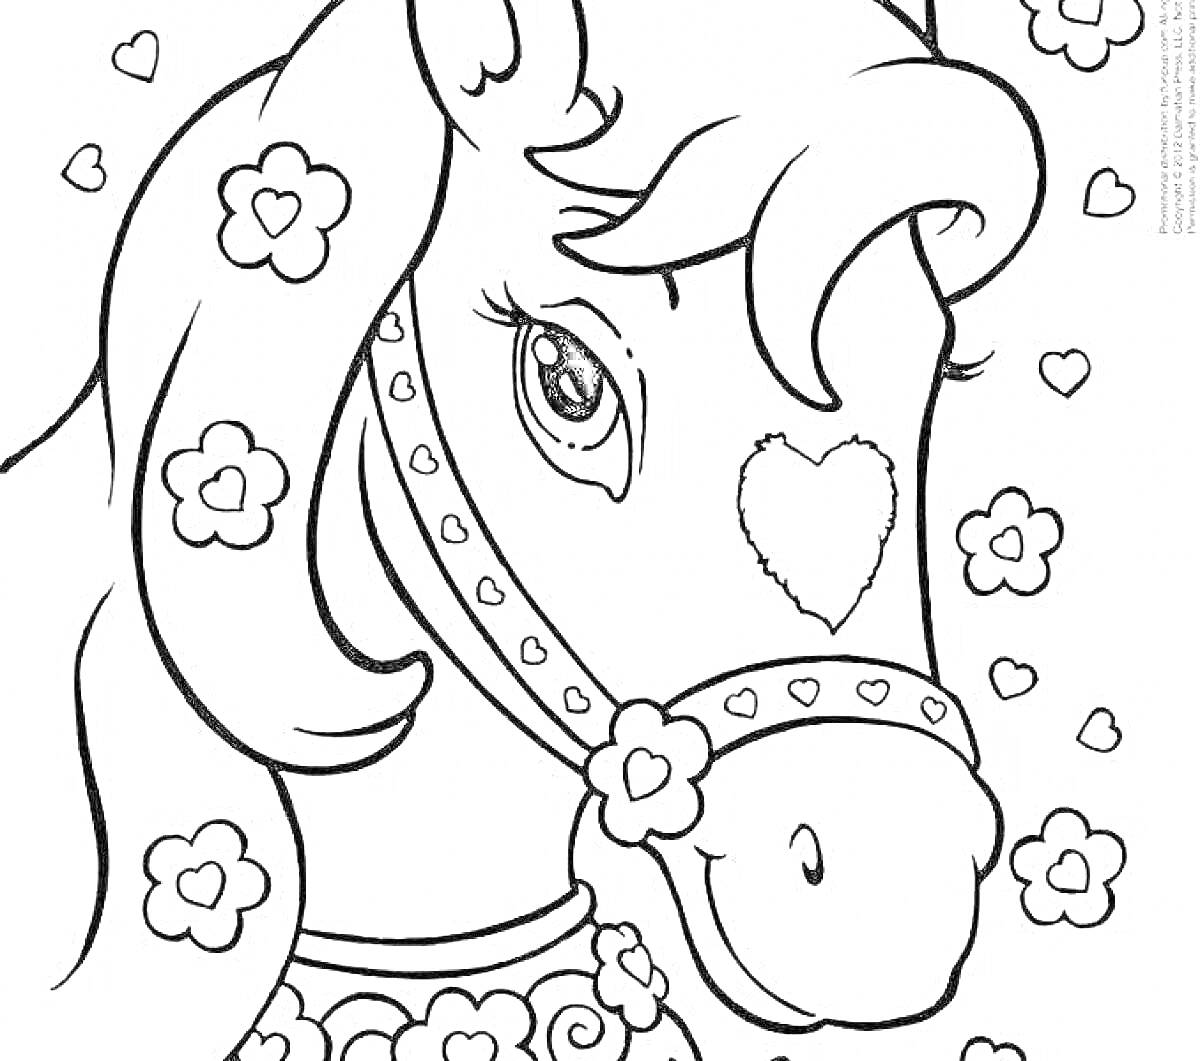 Раскраска Портрет лошади с сердечками и цветами